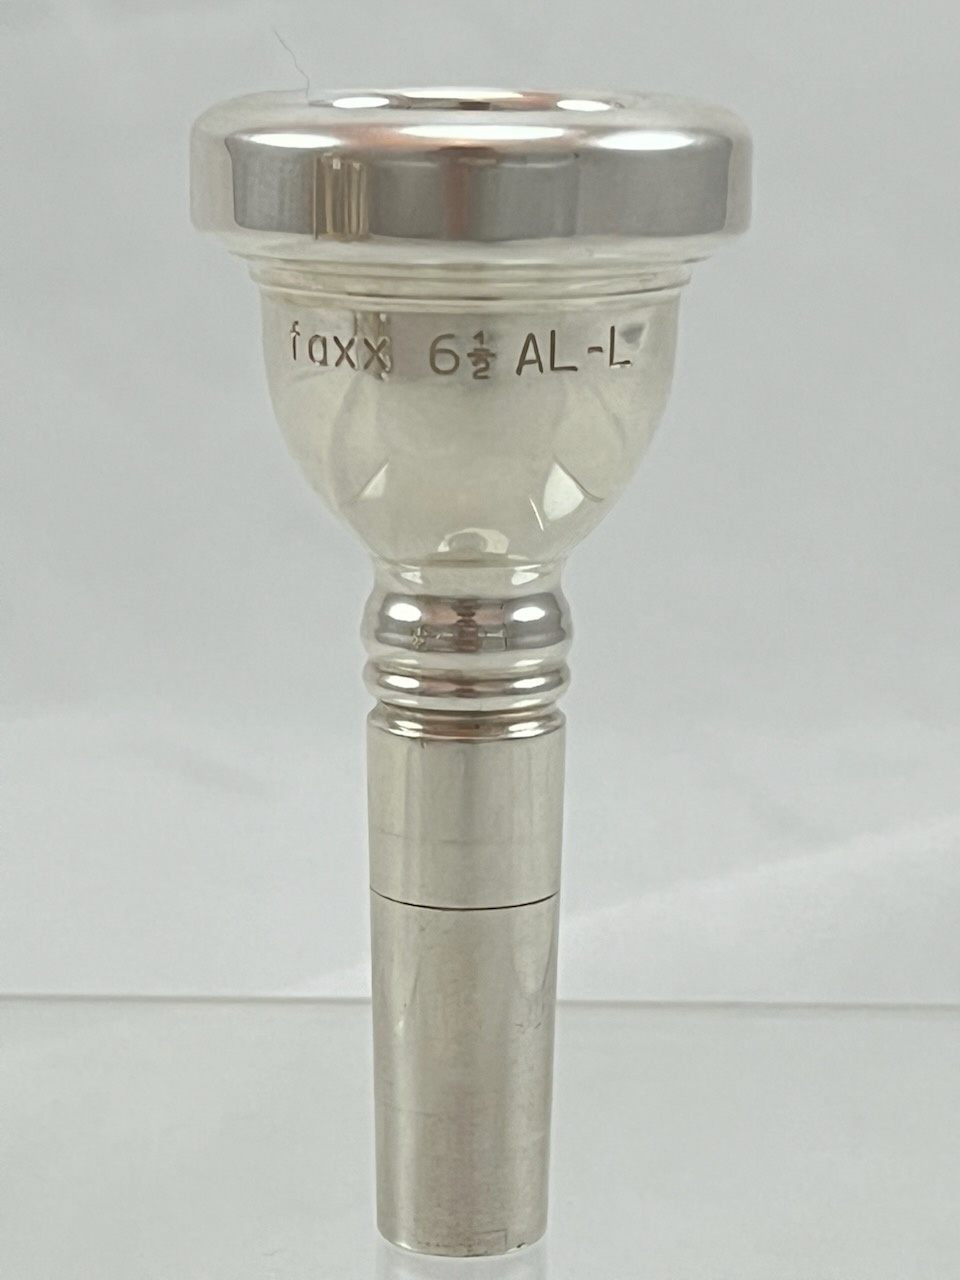 Faxx Used Faxx 6.5AL-L Tbn Mouthpiece